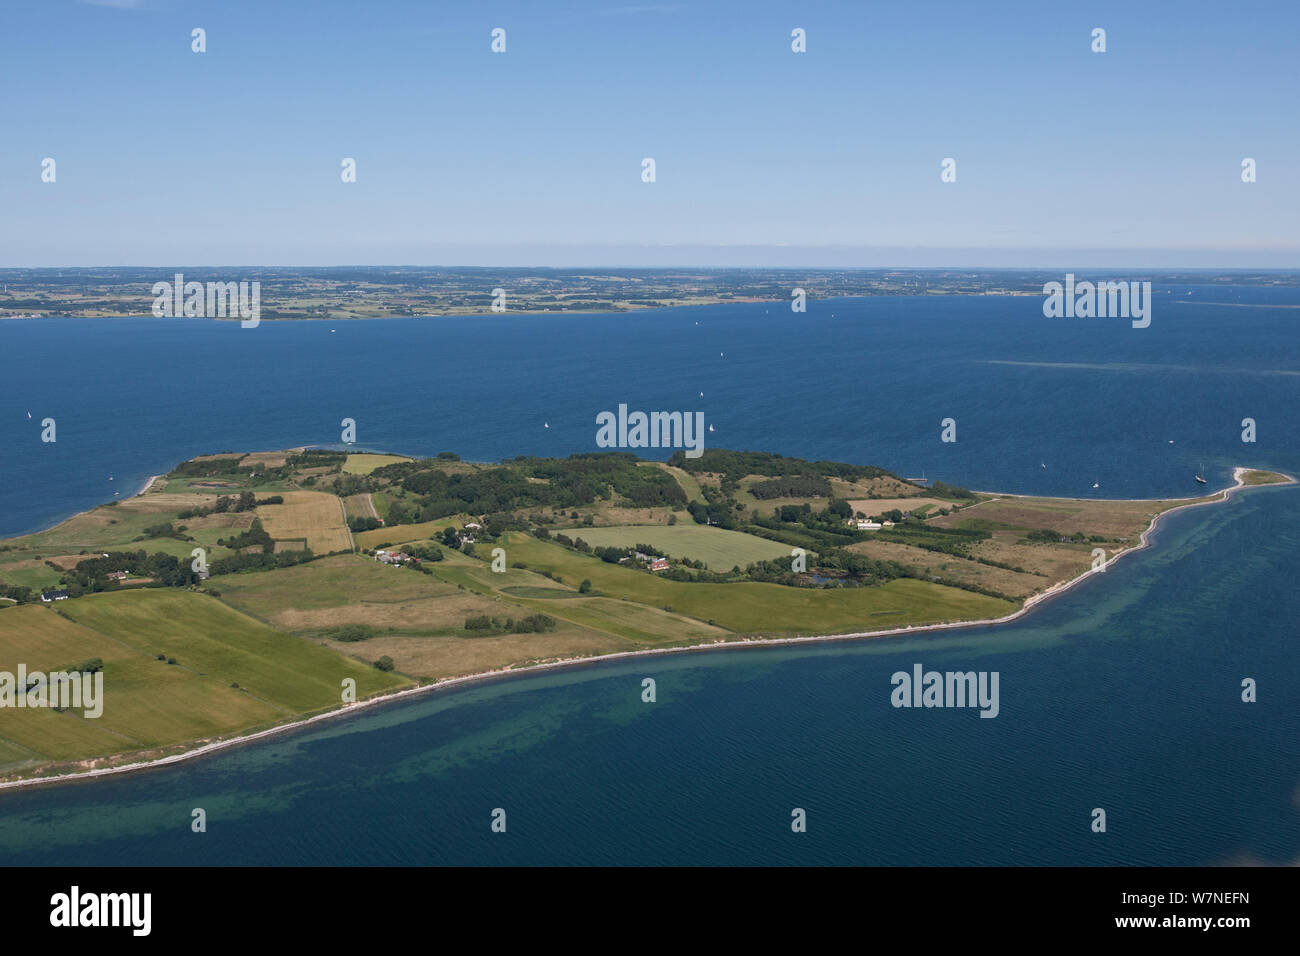 Aerial view of Korshavn, Avernako, Baltic Sea, Denmark, July 2012 Stock Photo